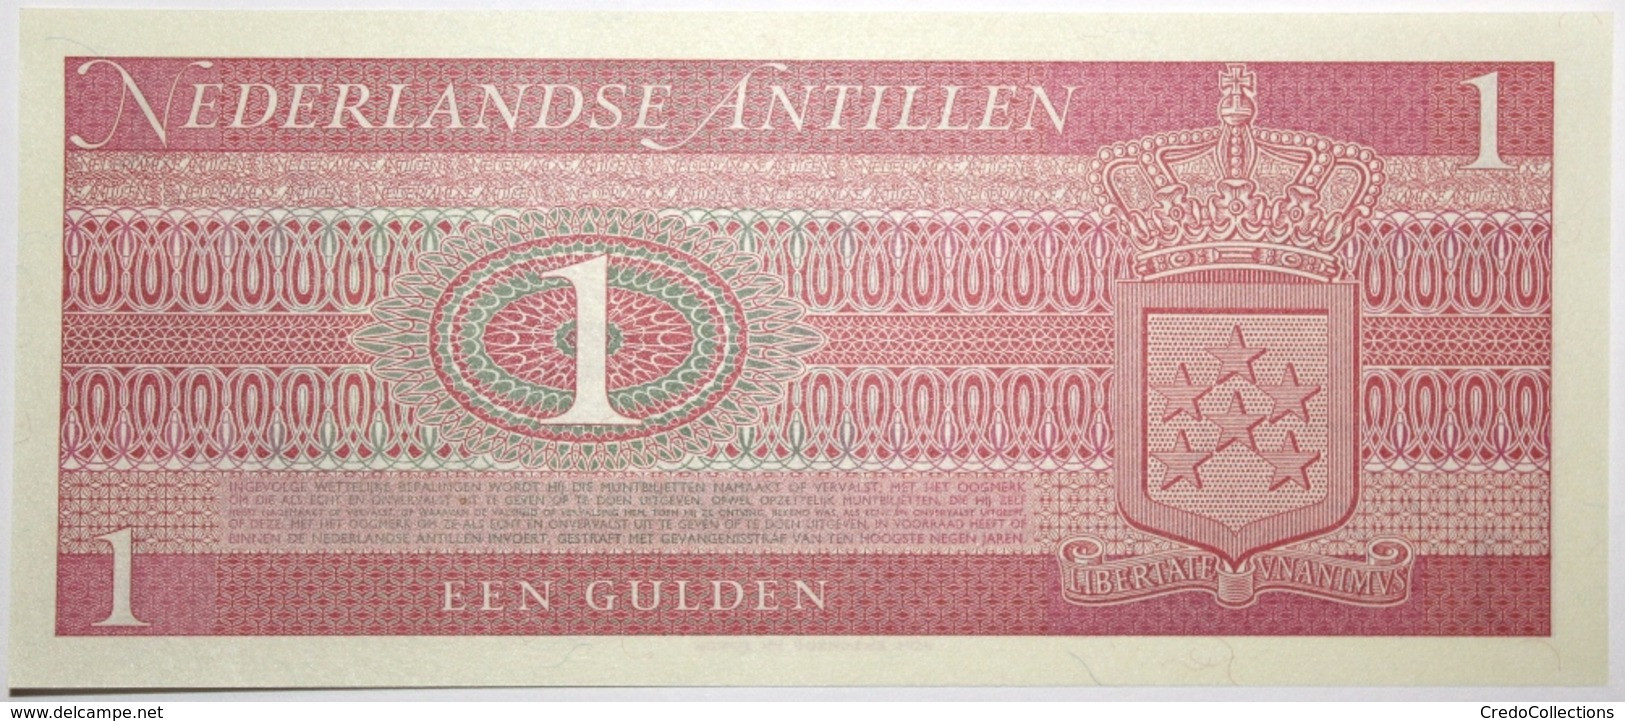 Antilles Néerlandaises - 1 Gulden - 1970 - PICK 20a - NEUF - Niederländische Antillen (...-1986)